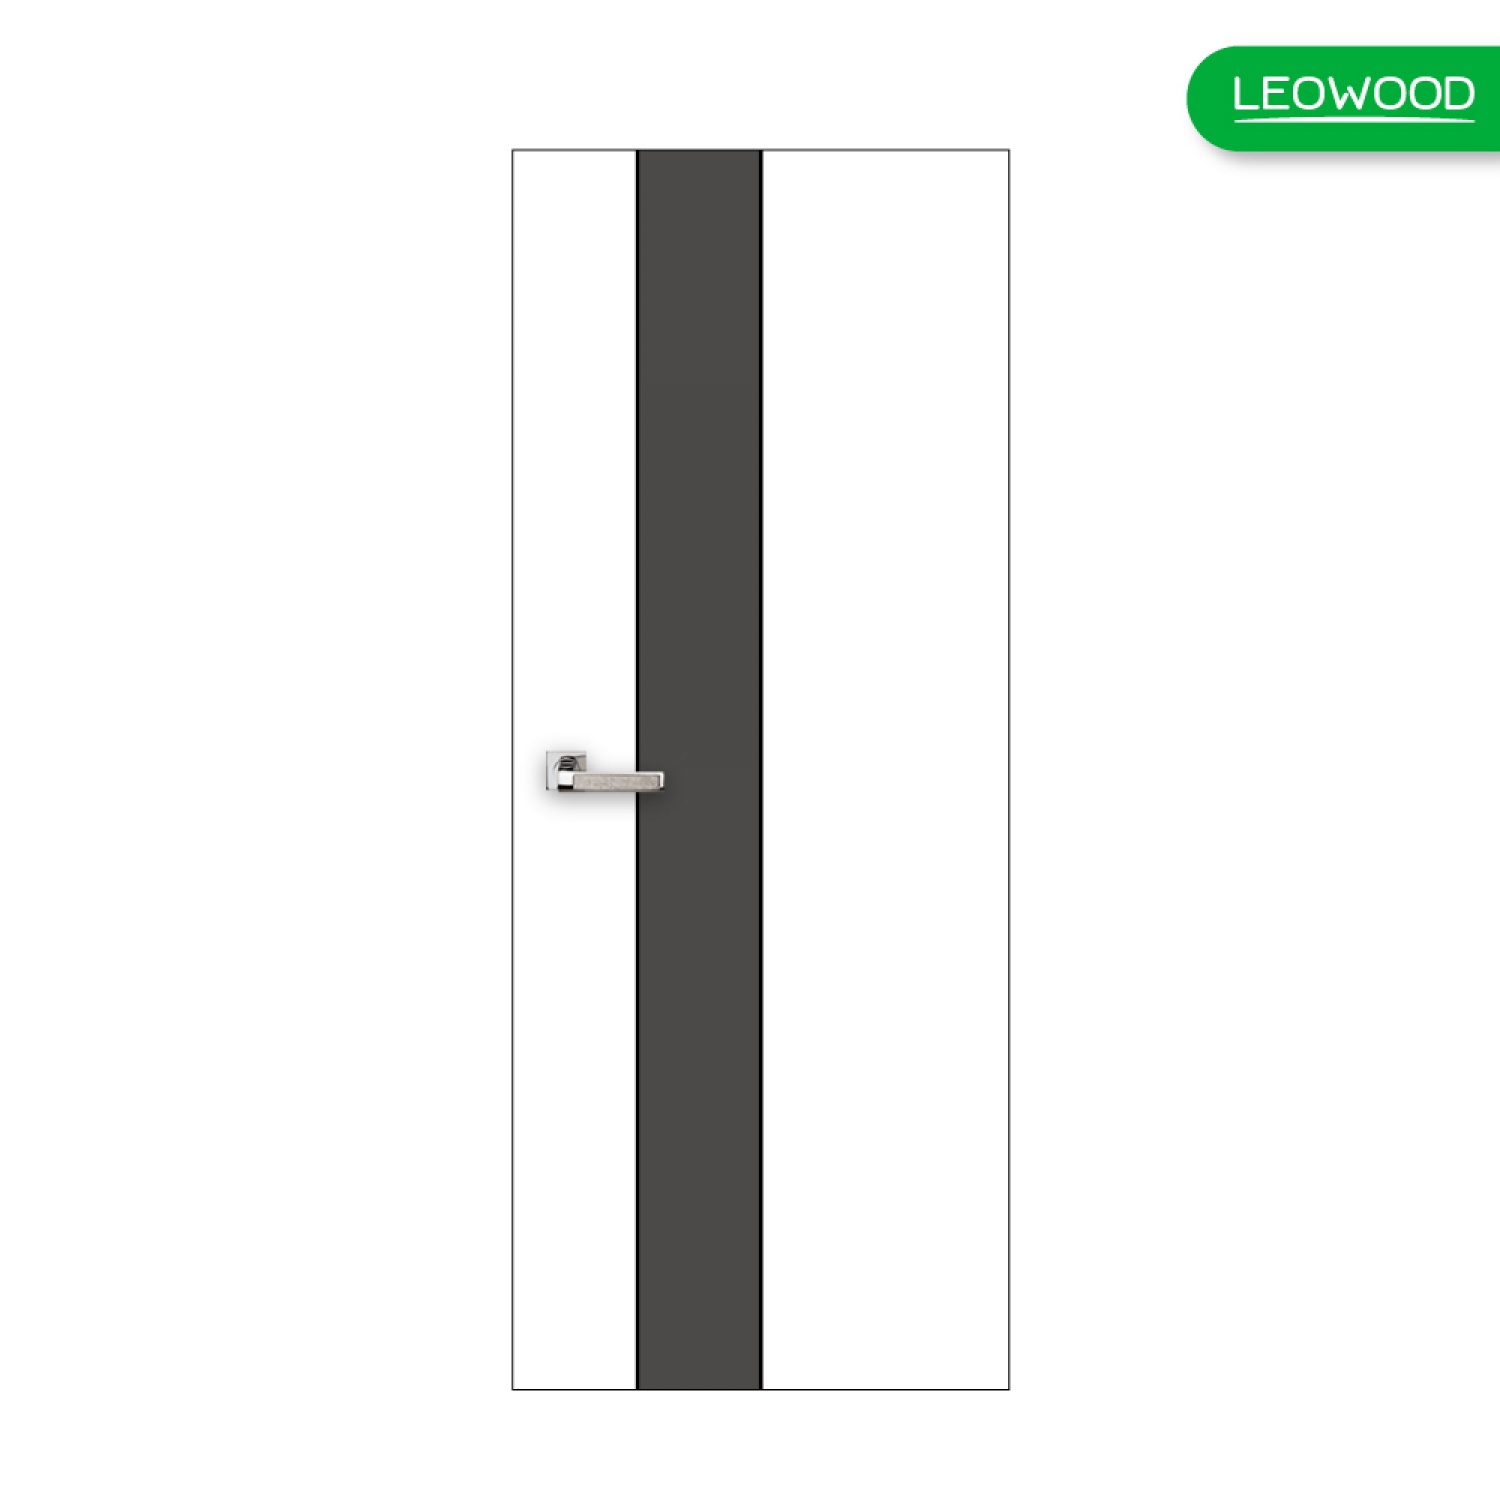 LEOWOOD ประตู iDoor S1 - Pearl White-Platinum Grey ขนาด 80x200 ซม.  (IP1448)  